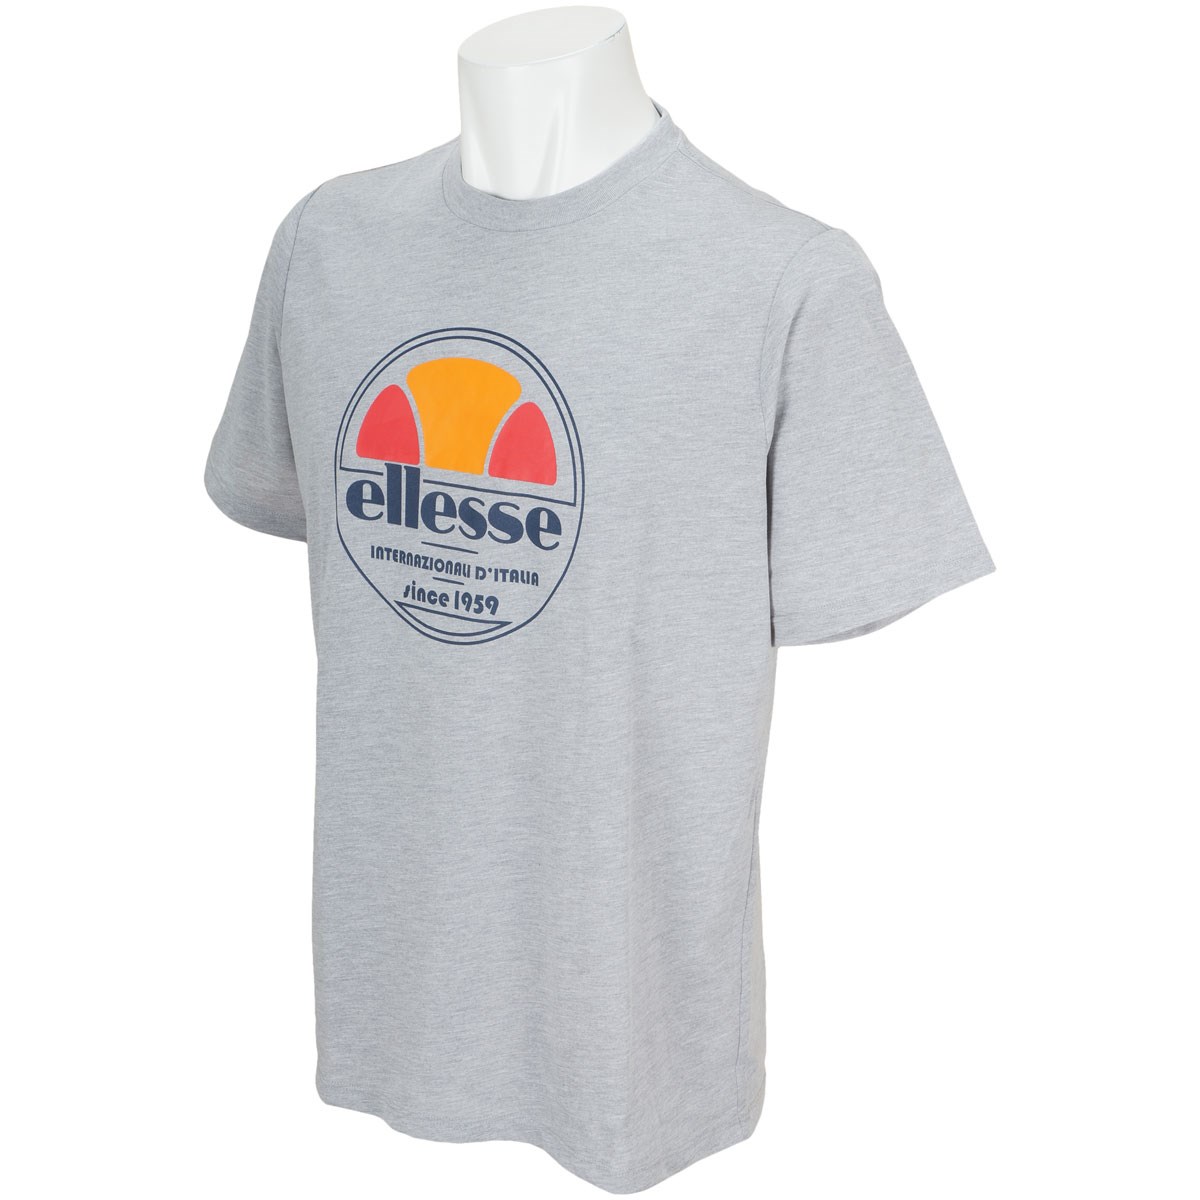  [アウトレット] [在庫限りのお買い得商品] エレッセ ビッグハーフボール半袖Tシャツ ゴルフウェア